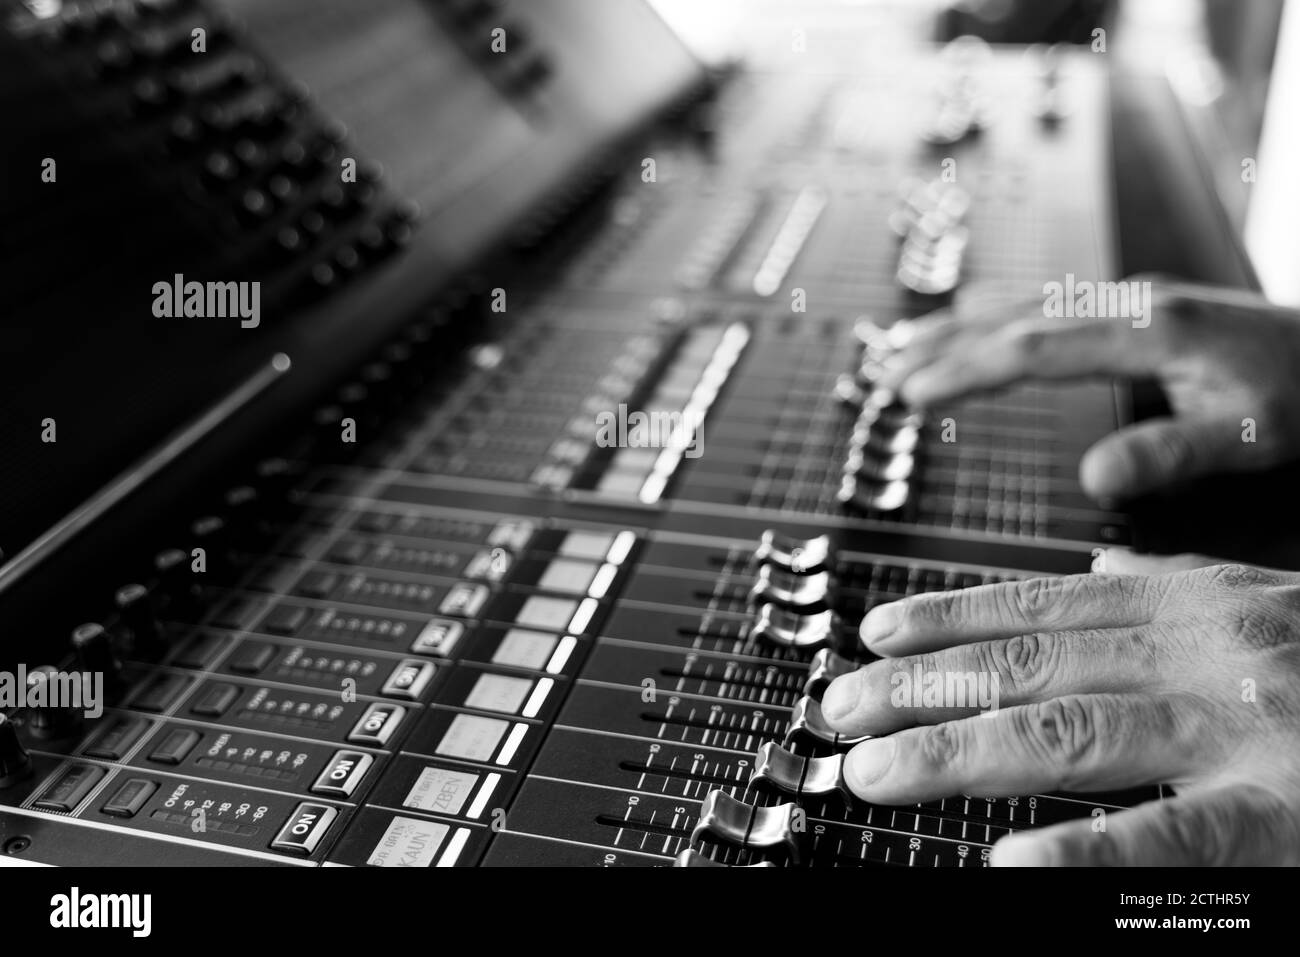 Il tecnico del suono lavora con le mani sul mixer del suono in concerto dal vivo. Immagine in bianco e nero Foto Stock